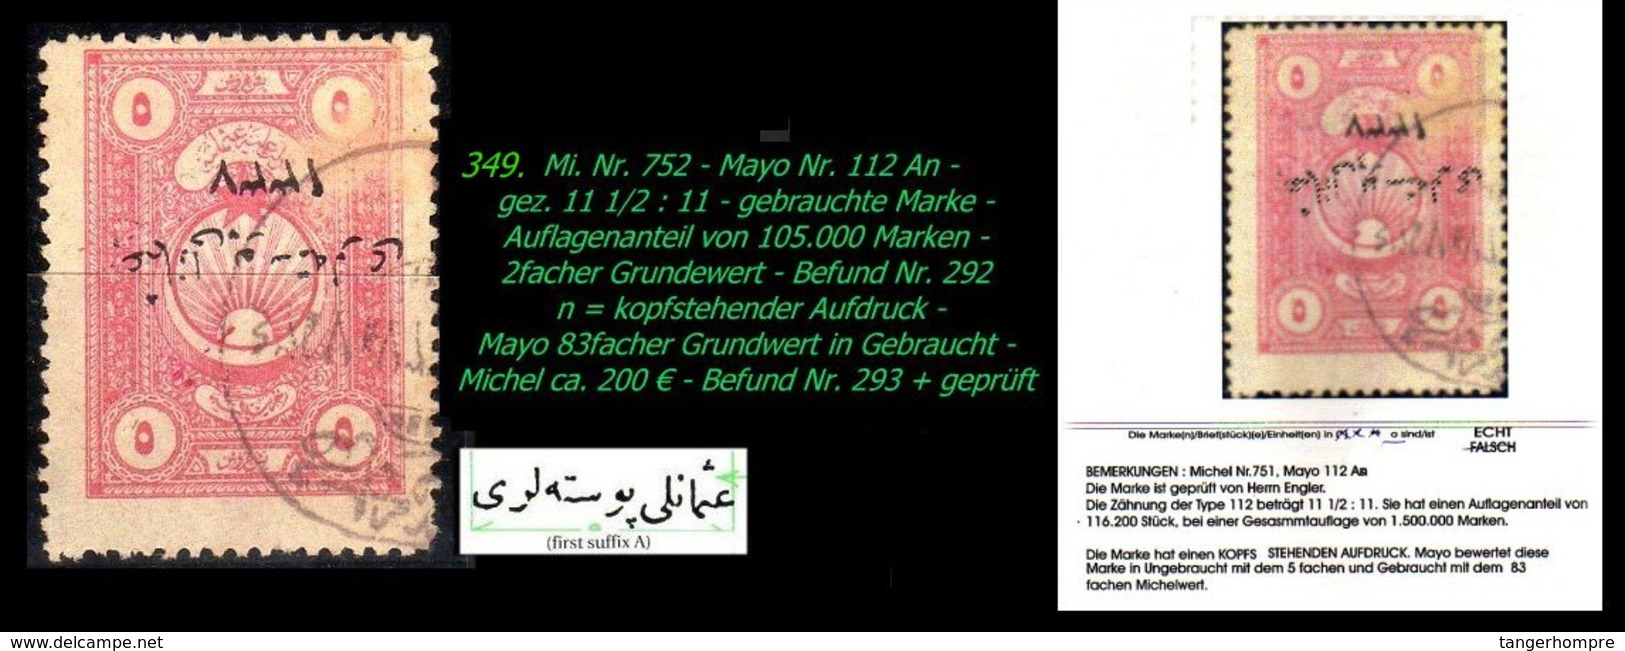 EARLY OTTOMAN SPECIALIZED FOR SPECIALIST, SEE...Mi. Nr. 752 - Mayo 112 An - Kopfstehender Aufdruck - Seltene Zähnung - 1920-21 Anatolia